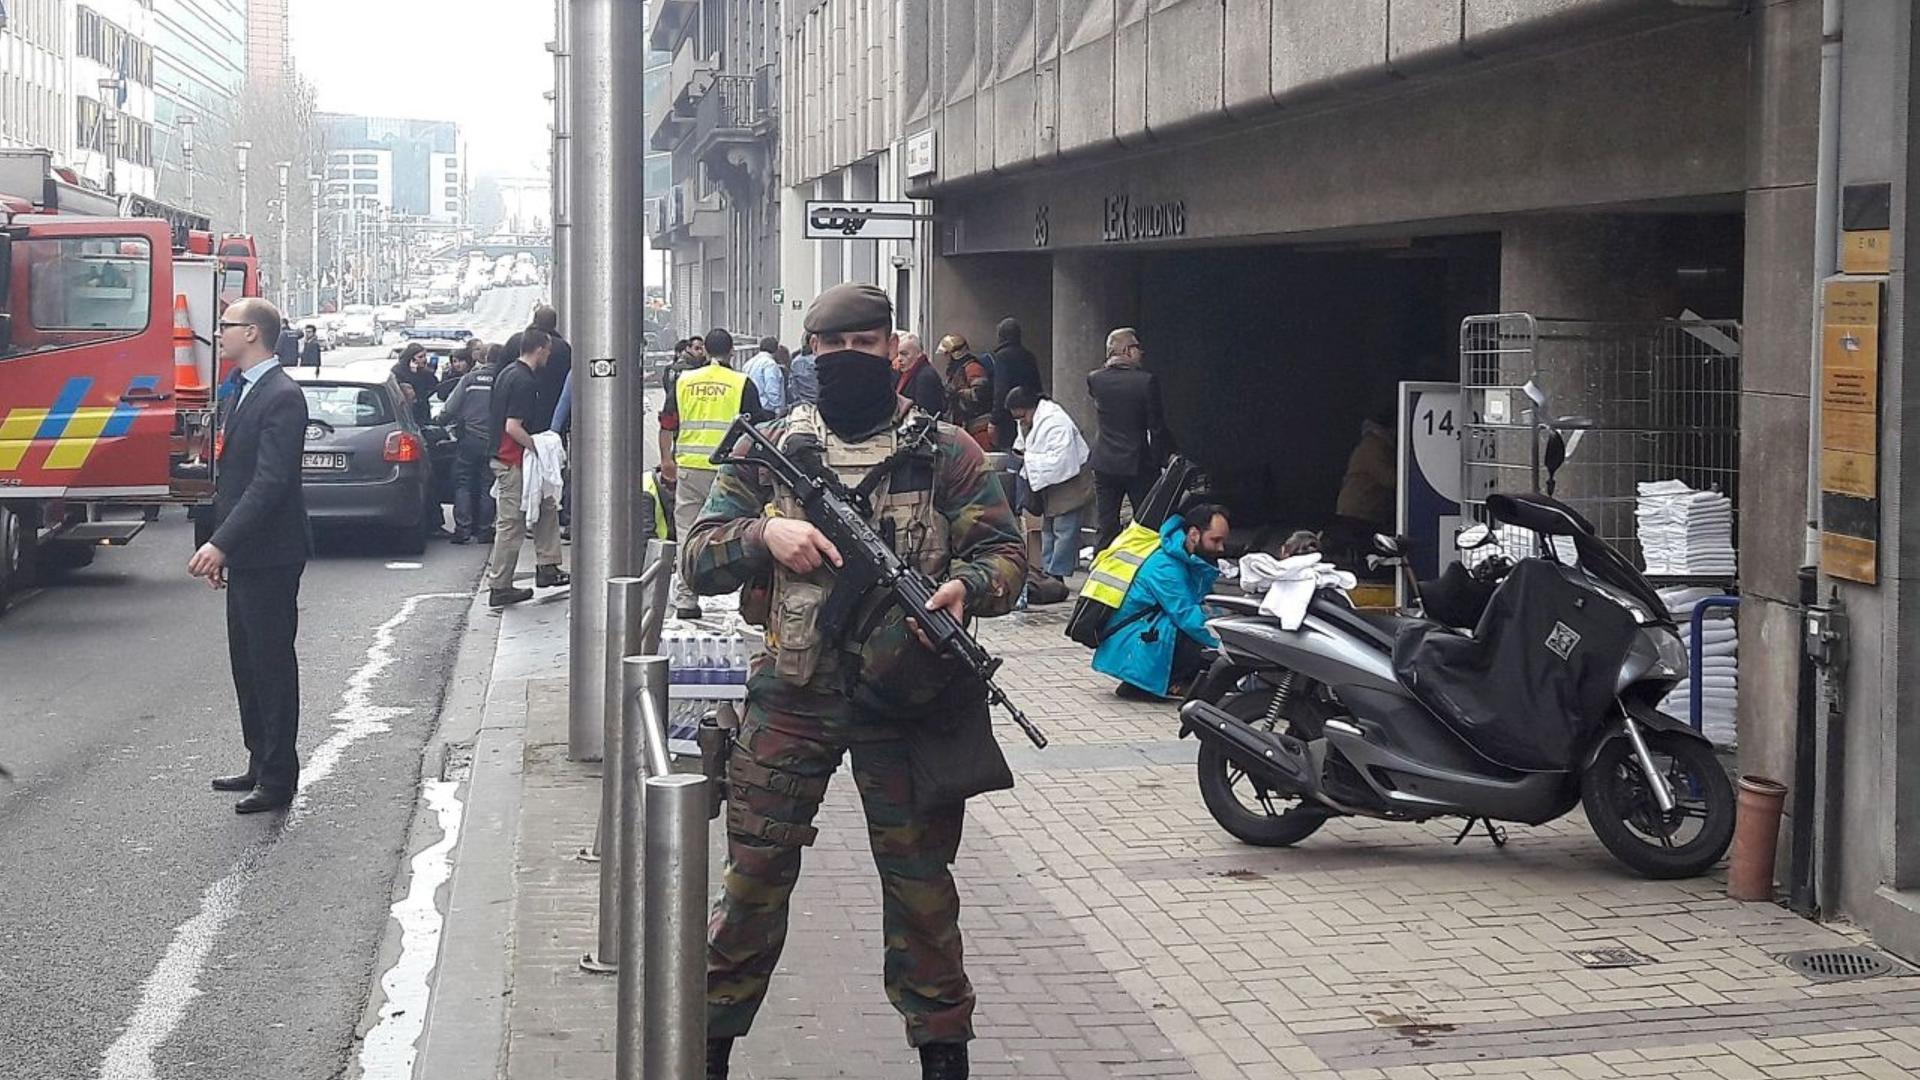 Le 22 mars 2016, des attentats avaient frappé Bruxelles, à l'aéroport de Zaventem et au métro Maelbeck. Le coup de filet de ce mardi vient raviver le spectre de cette terrible journée.